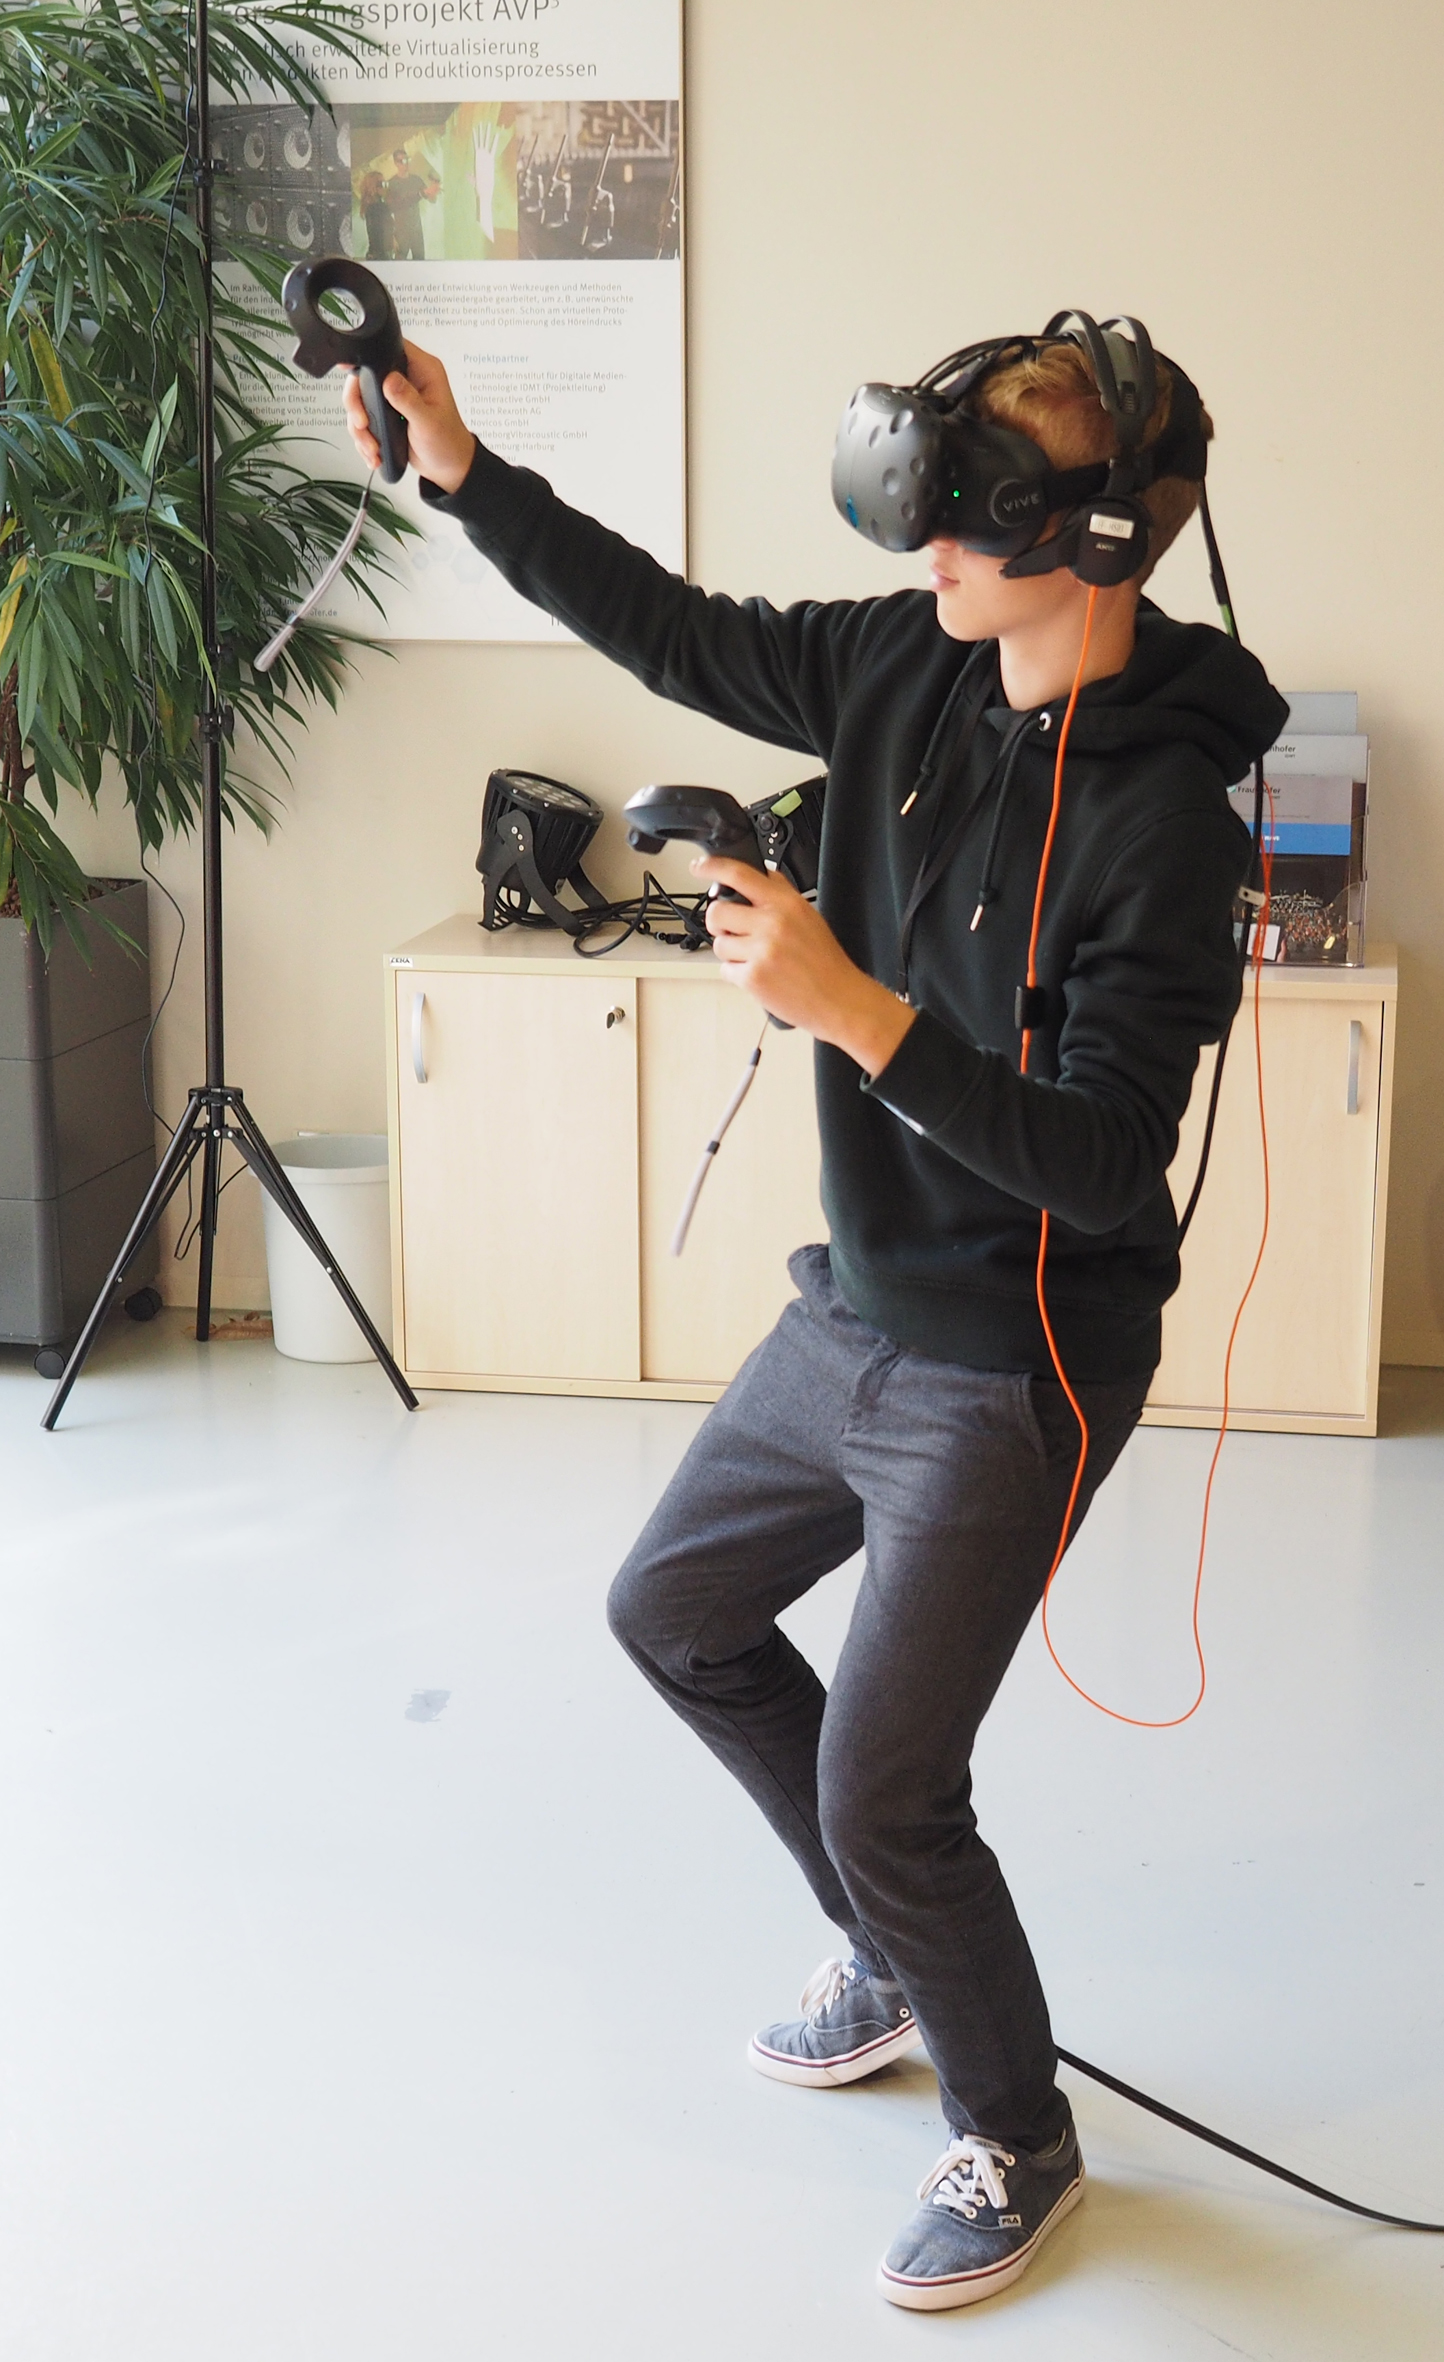 Teilnehmer testet VR-Computerspiel